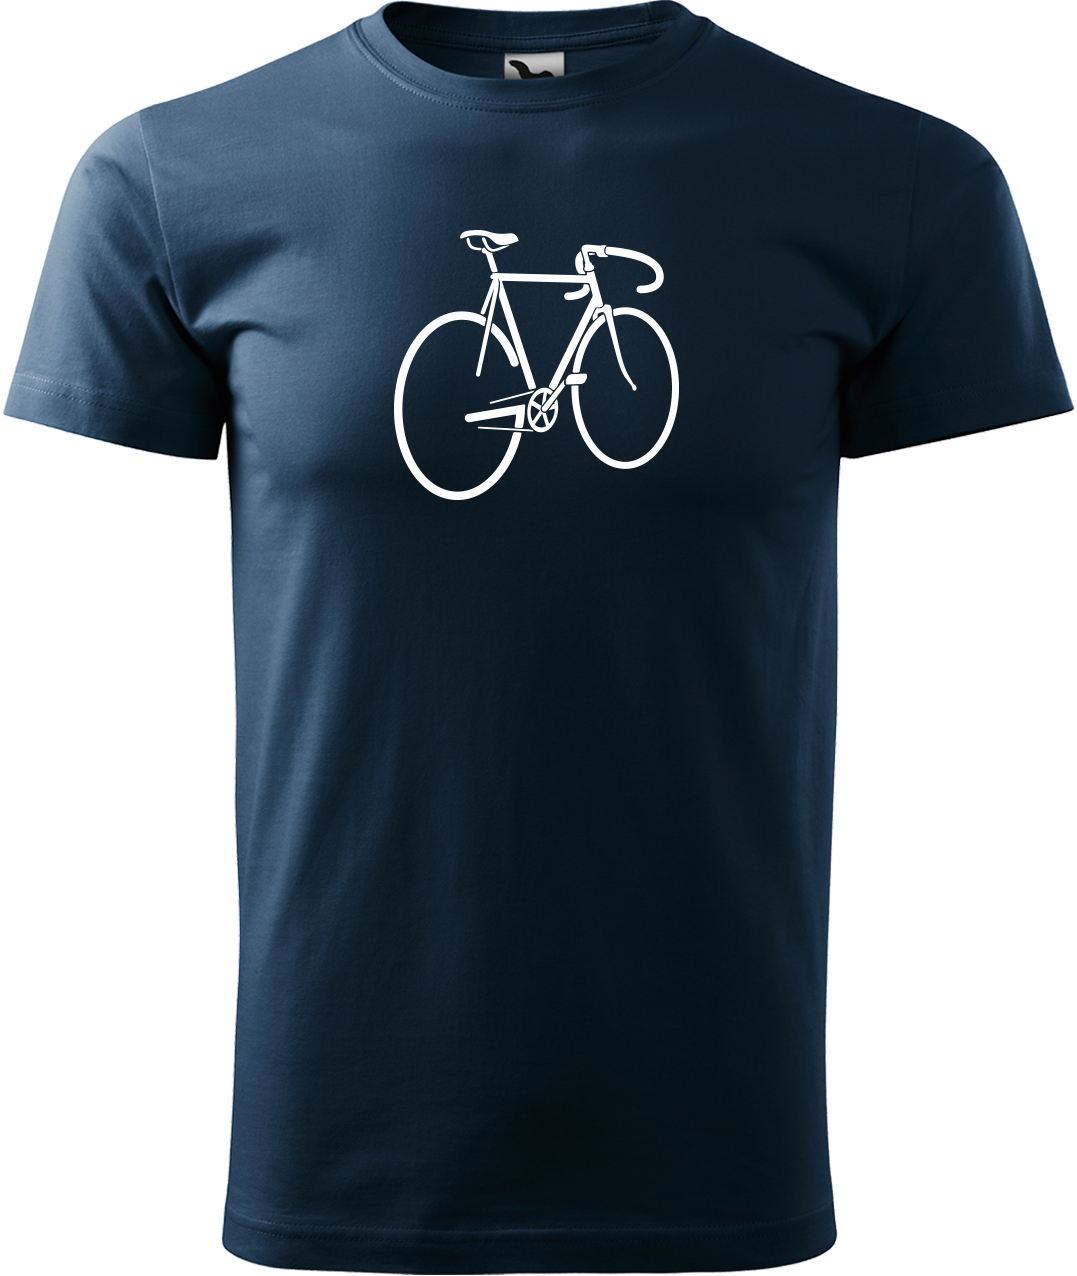 Pánské tričko s kolem - Pánské kolo Velikost: L, Barva: Námořní modrá (02)